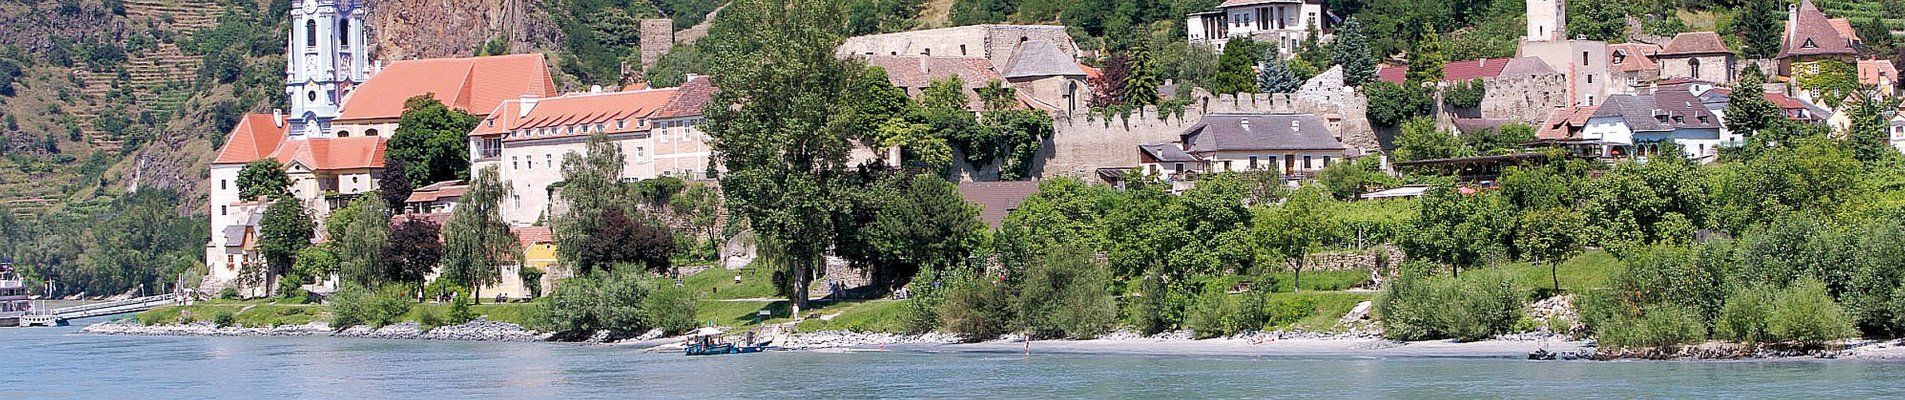 Flusskreuzfahrt auf der Donau - Dürnstein in der Wachau